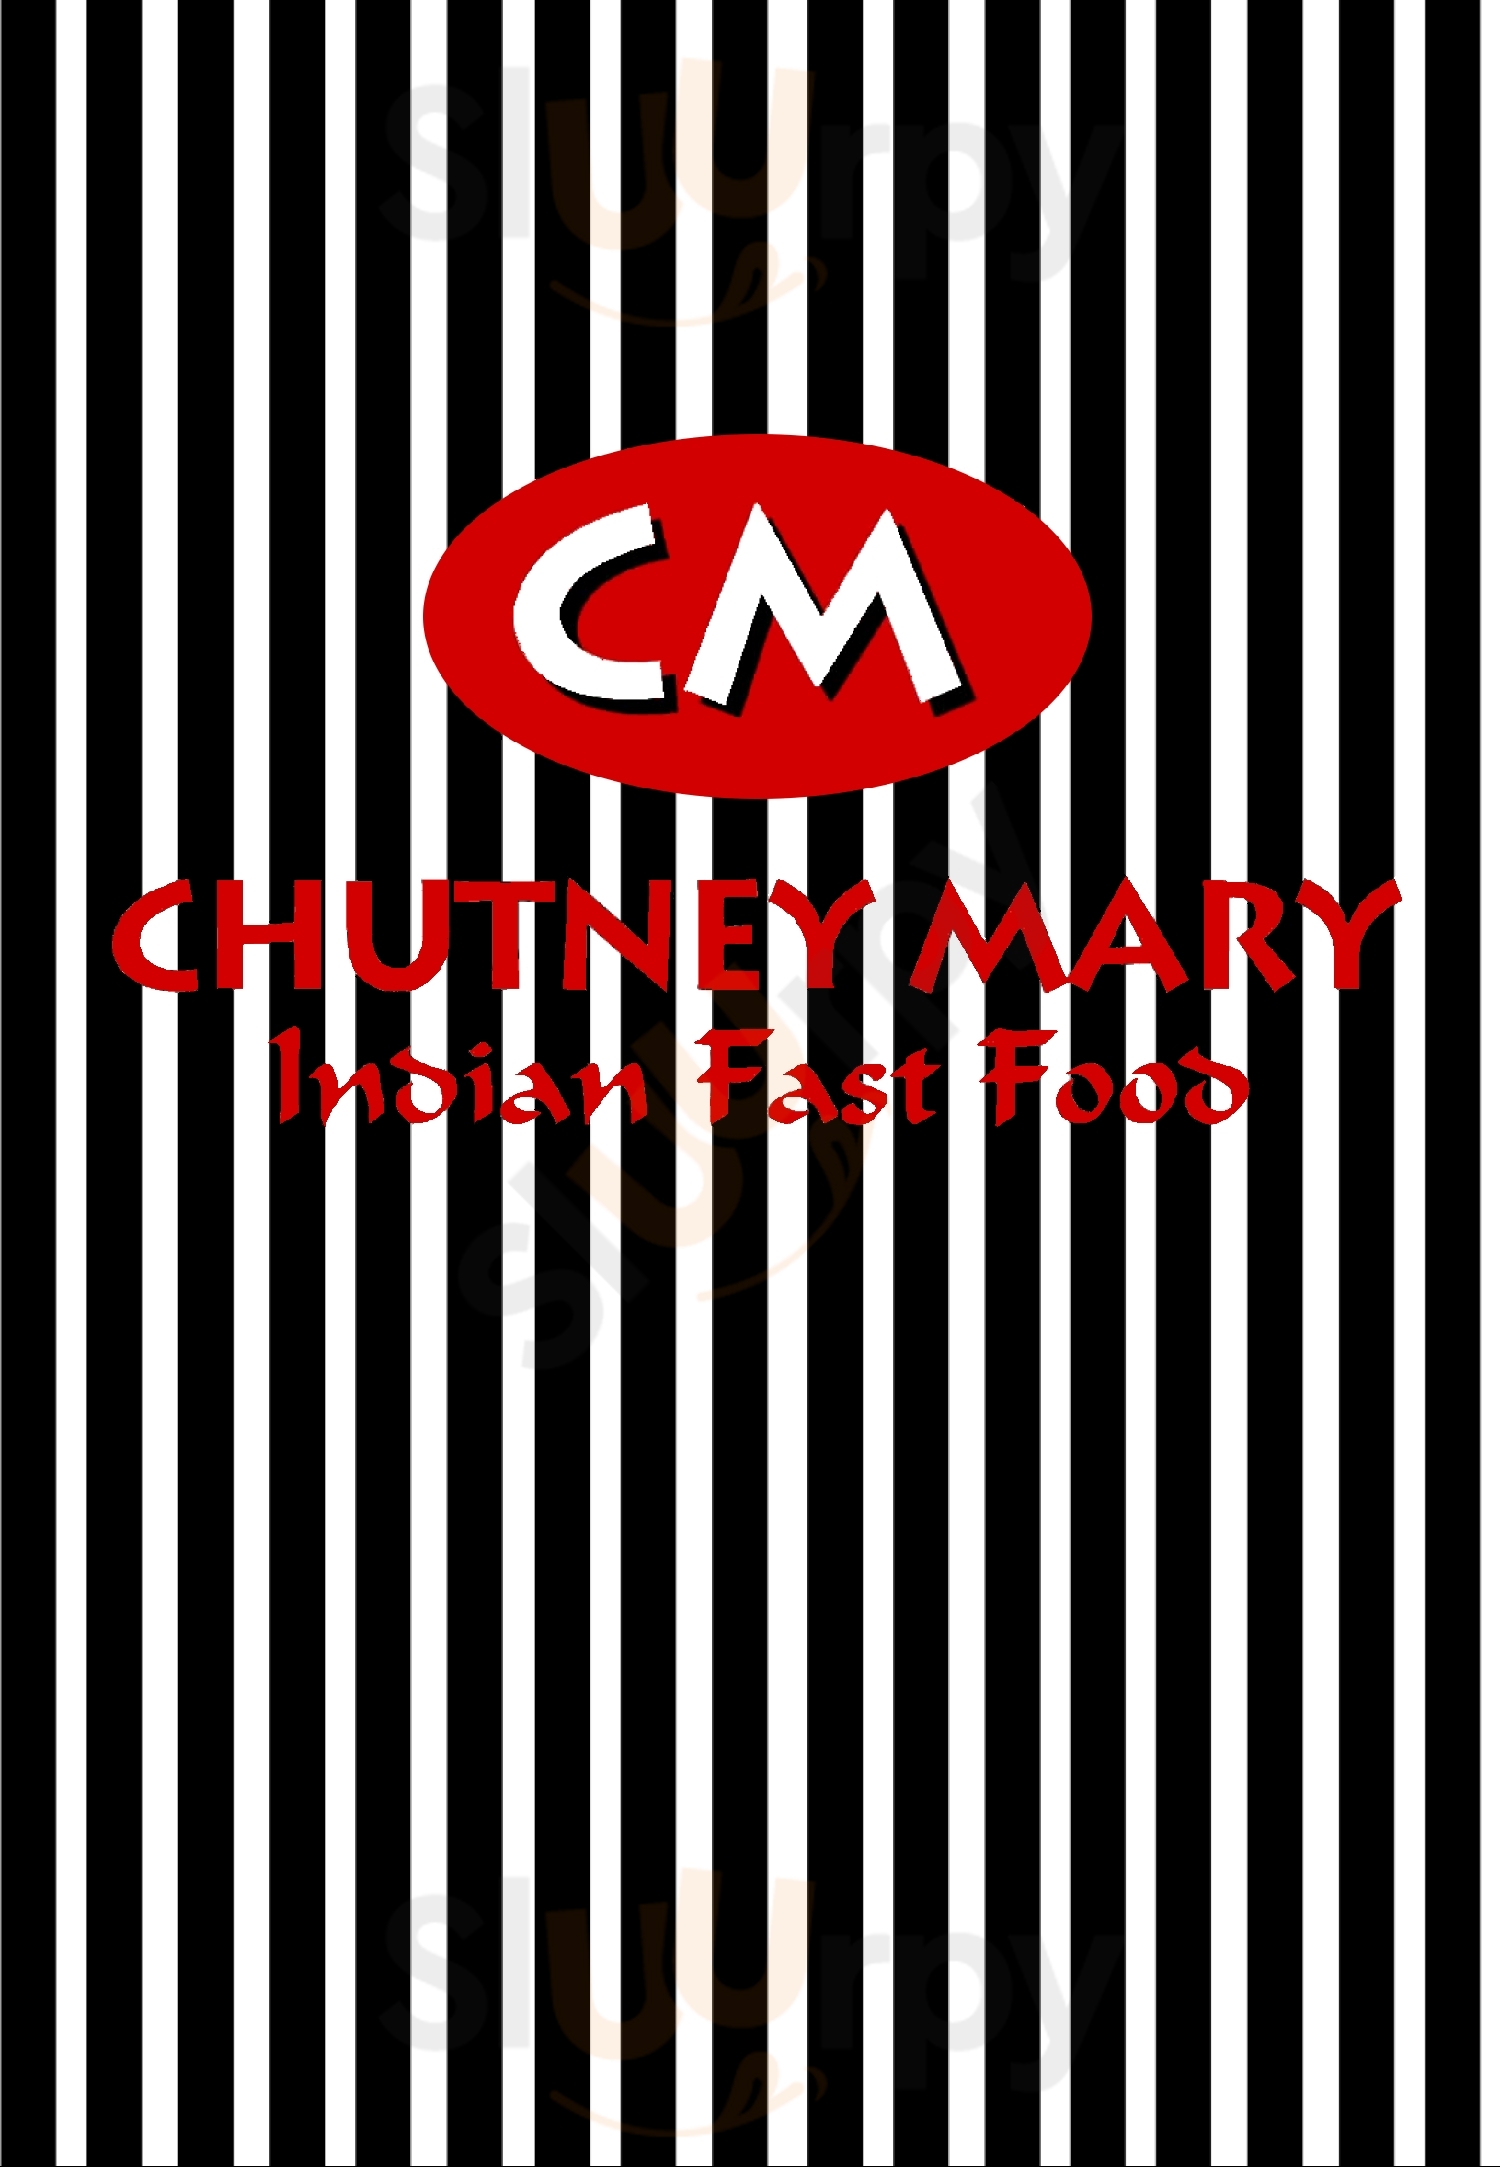 Chutney Mary Singapore Menu - 1